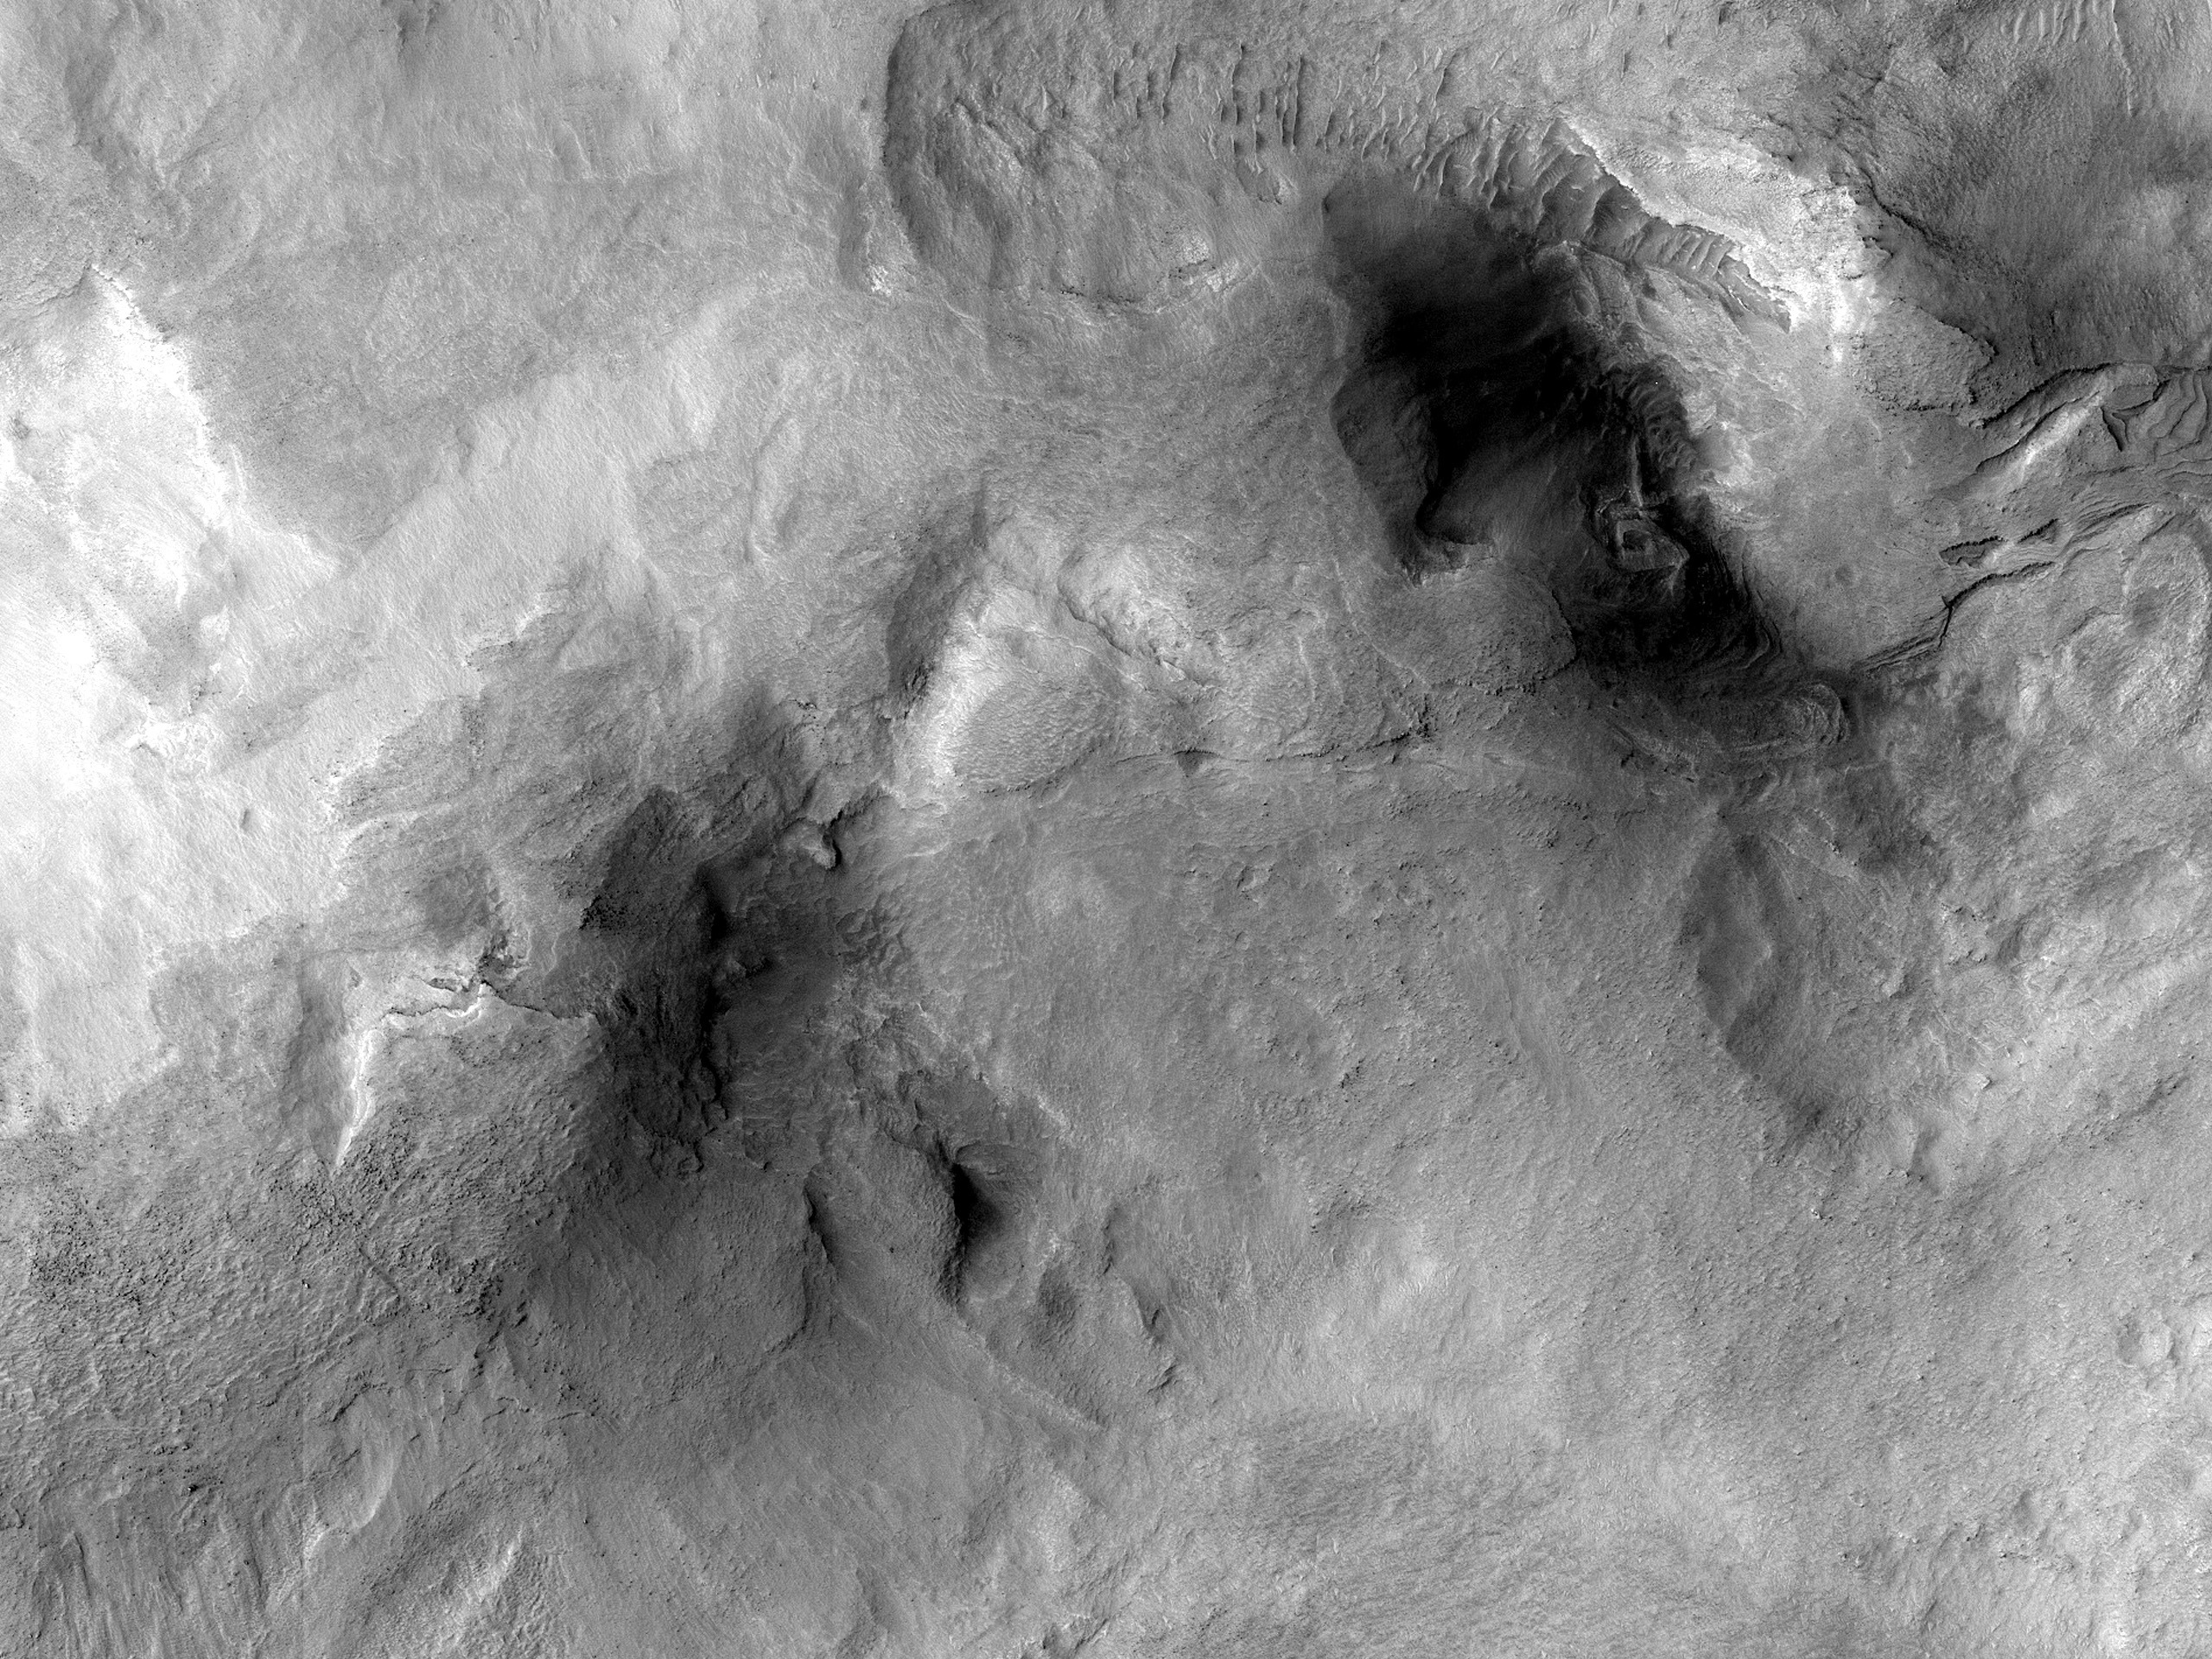 שכבות בשקע במישורי יוון (Hellas Planitia)